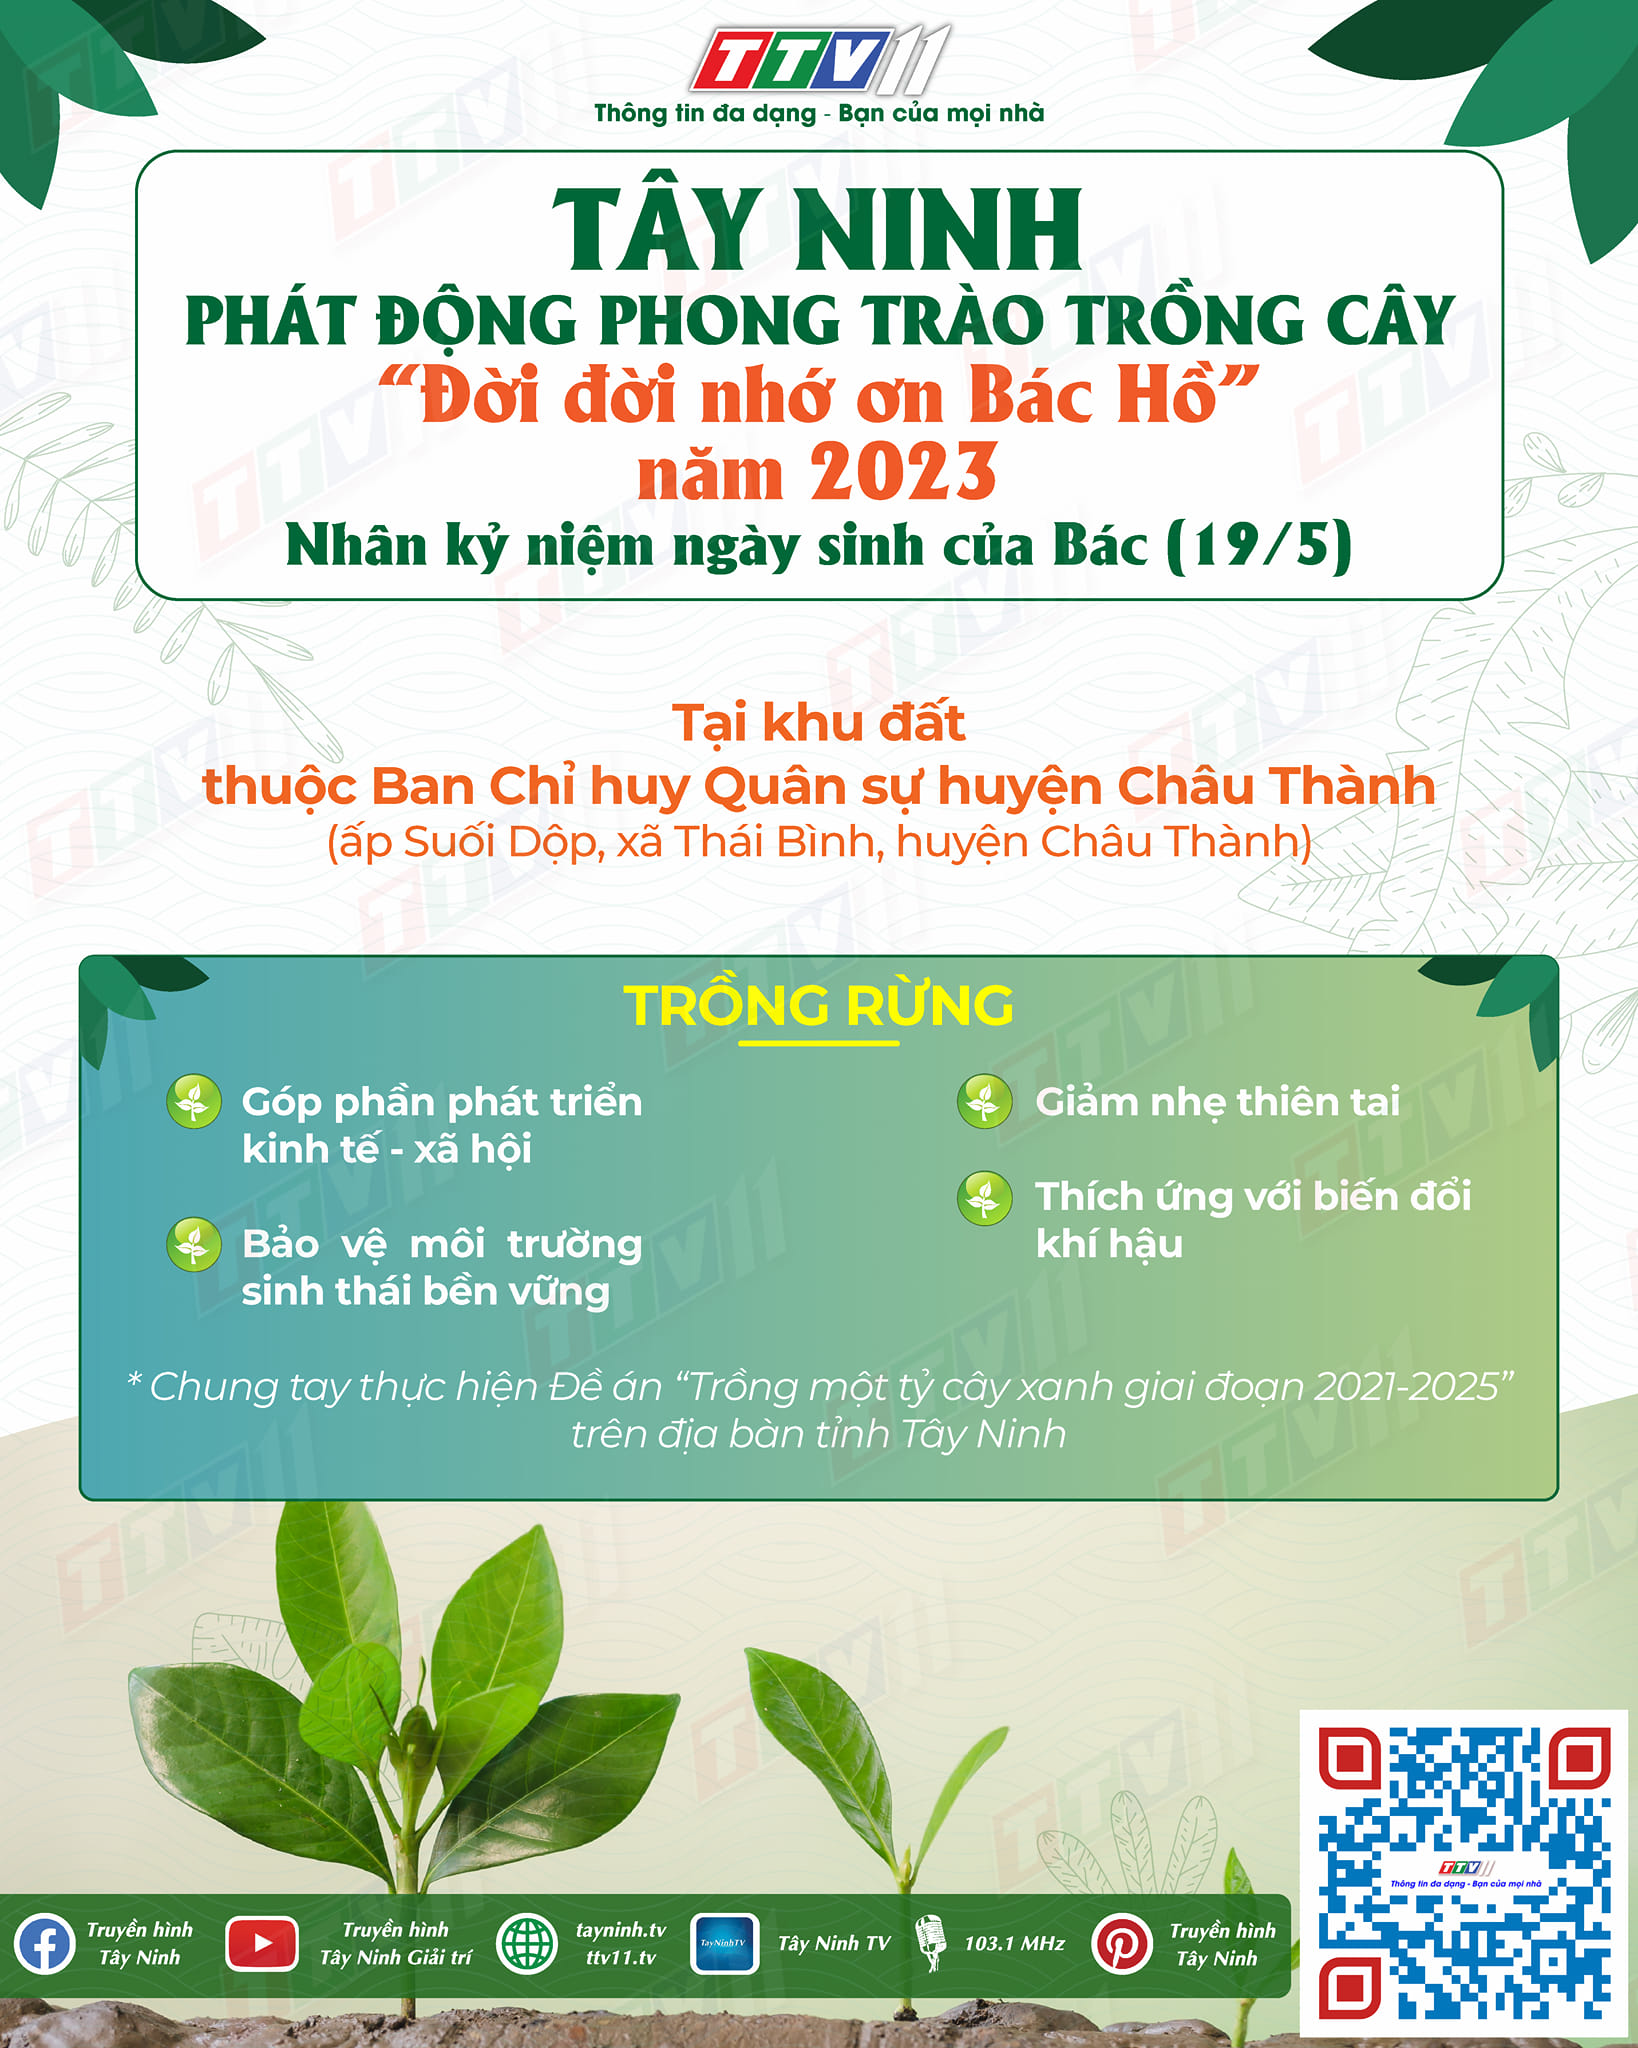 Tây Ninh hưởng ứng phong trào trồng cây “Đời đời nhớ ơn Bác Hồ” năm 2023 nhân kỷ niệm 133 năm ngày sinh của Bác (19/5/1890 - 19/5/2023)